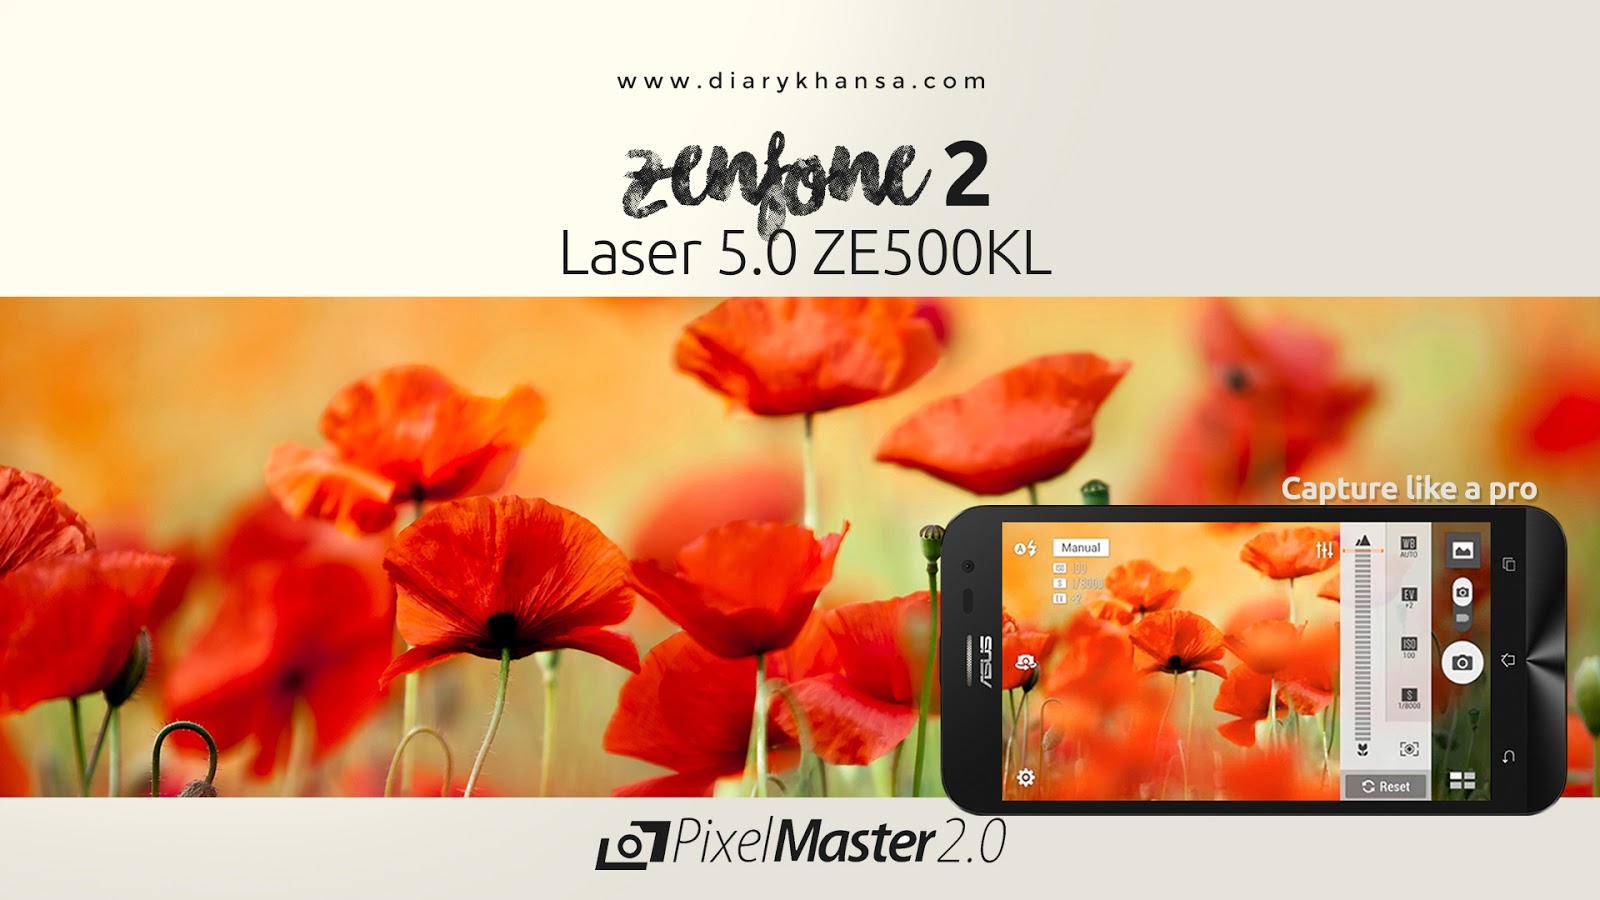 ZenFone 2 Laser 5. 0 ZE500KL